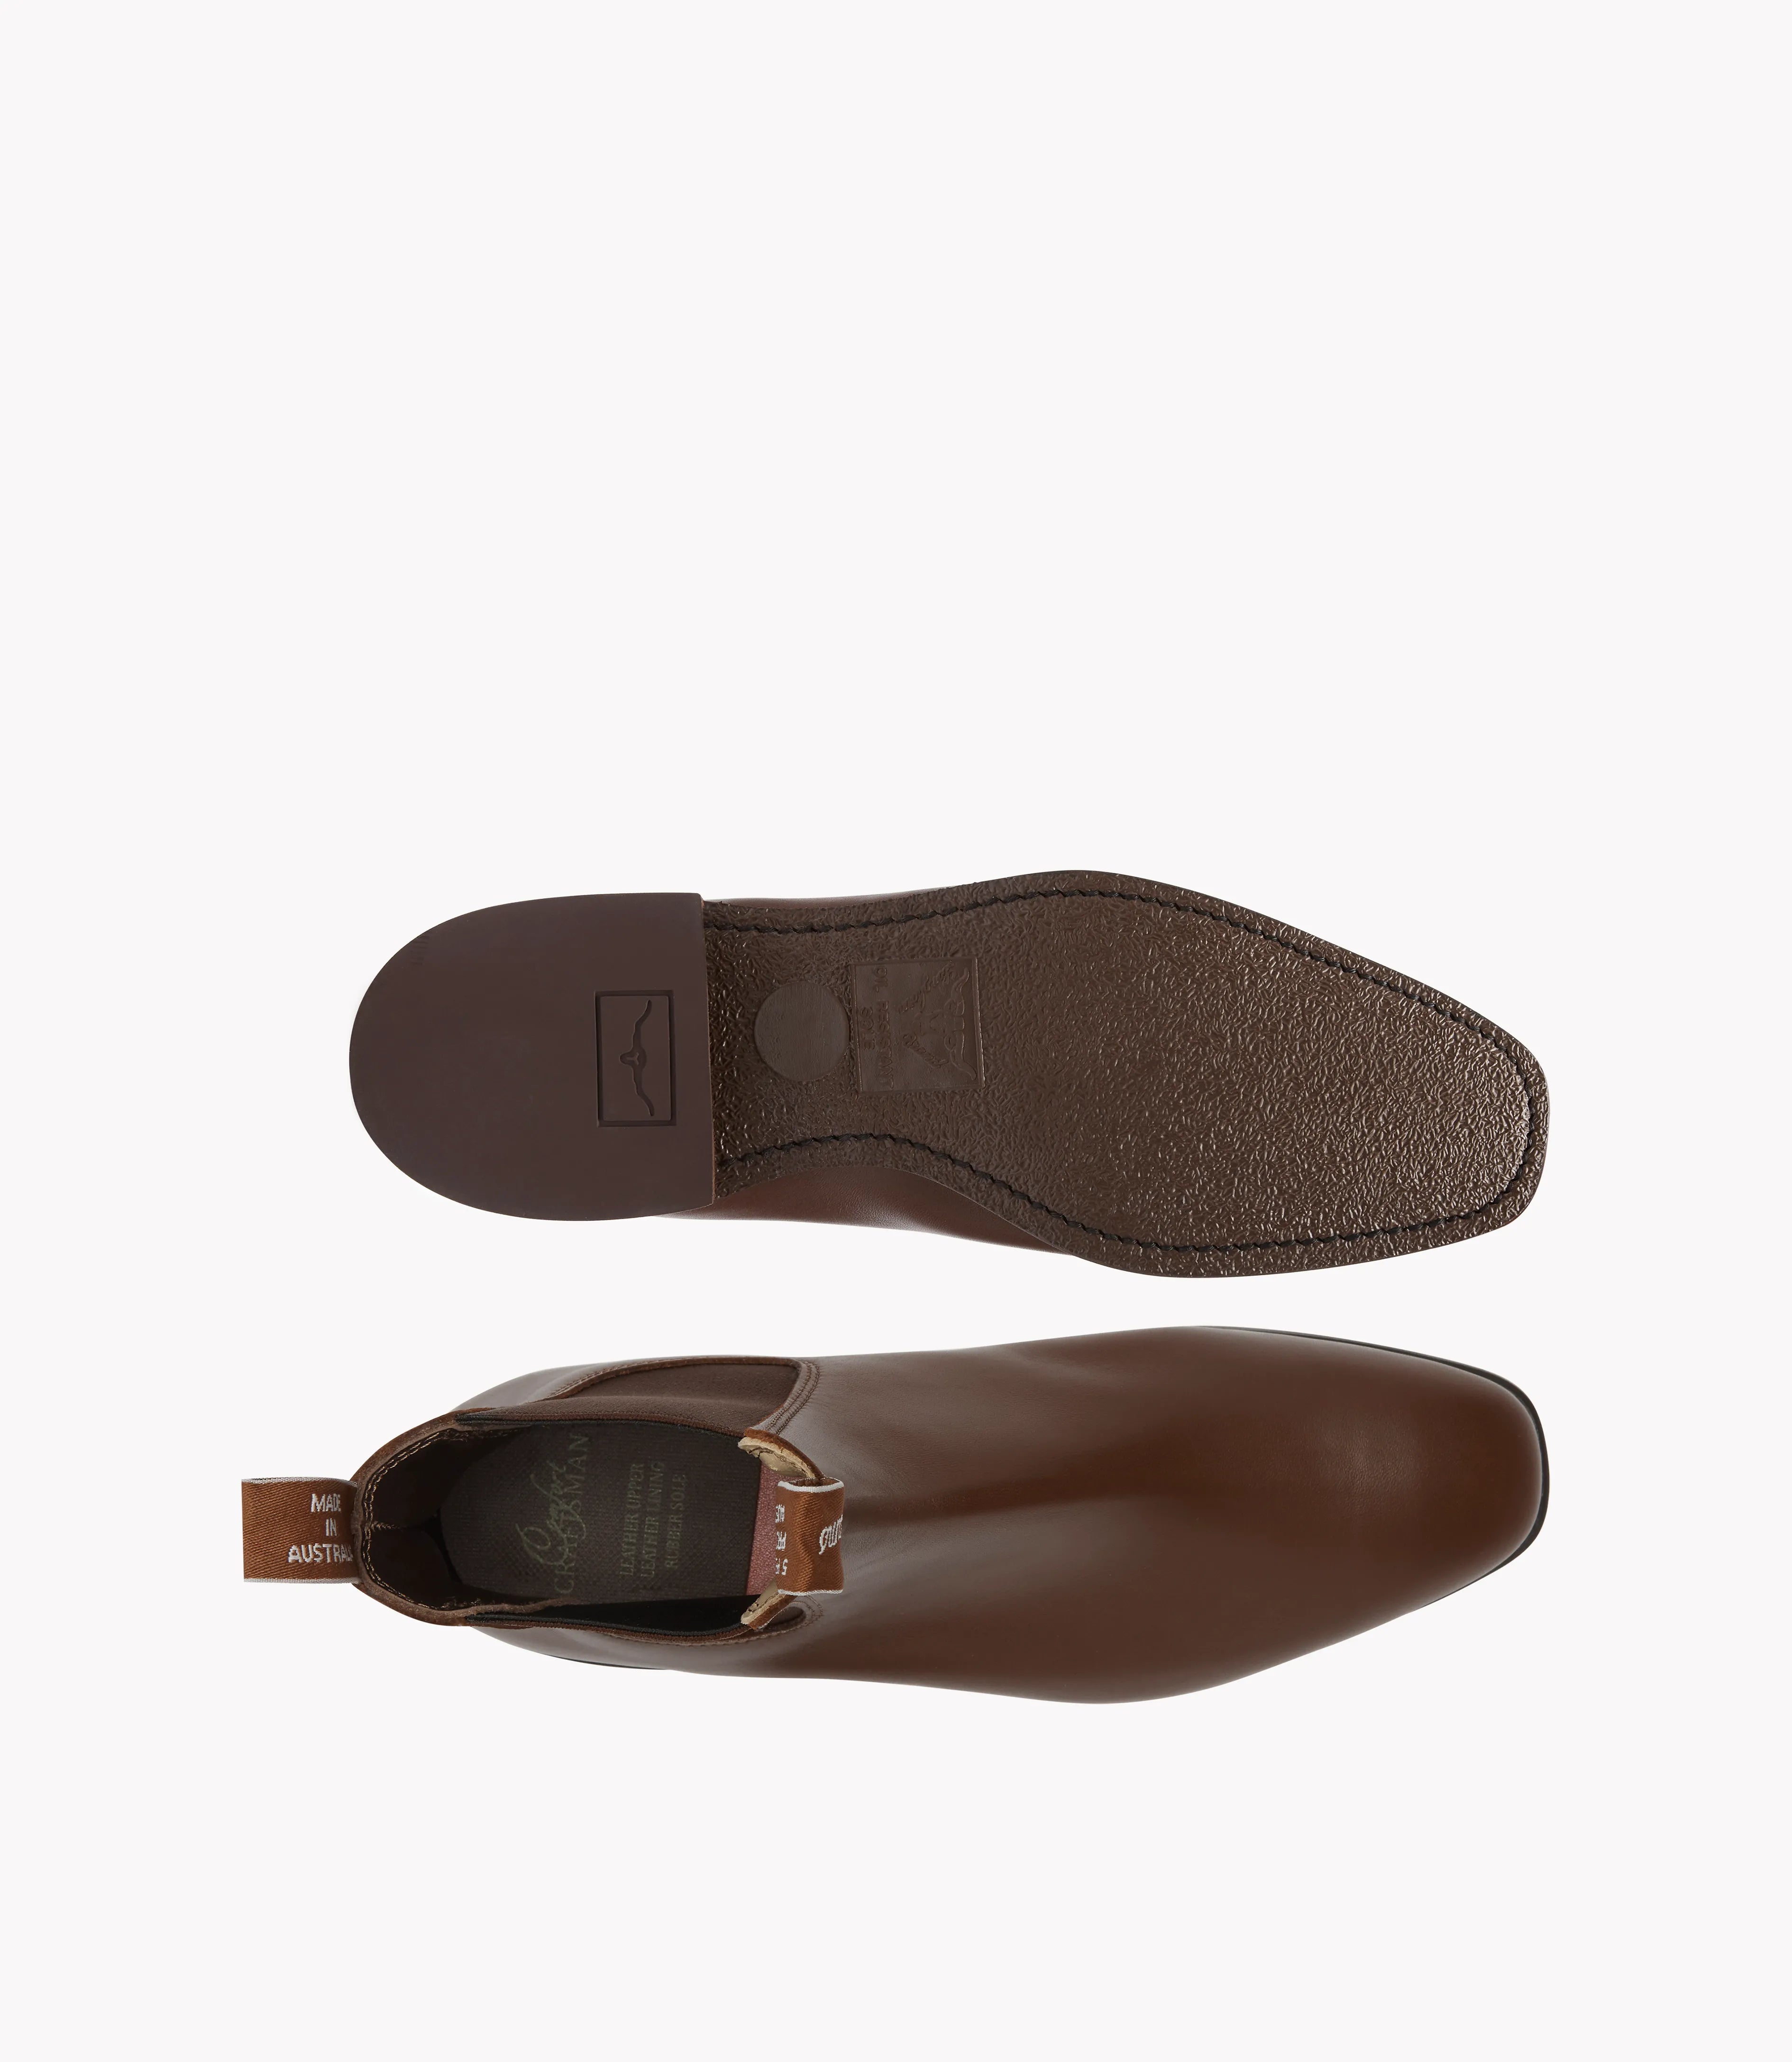 Comfort Craftsman Boot - Dark Tan